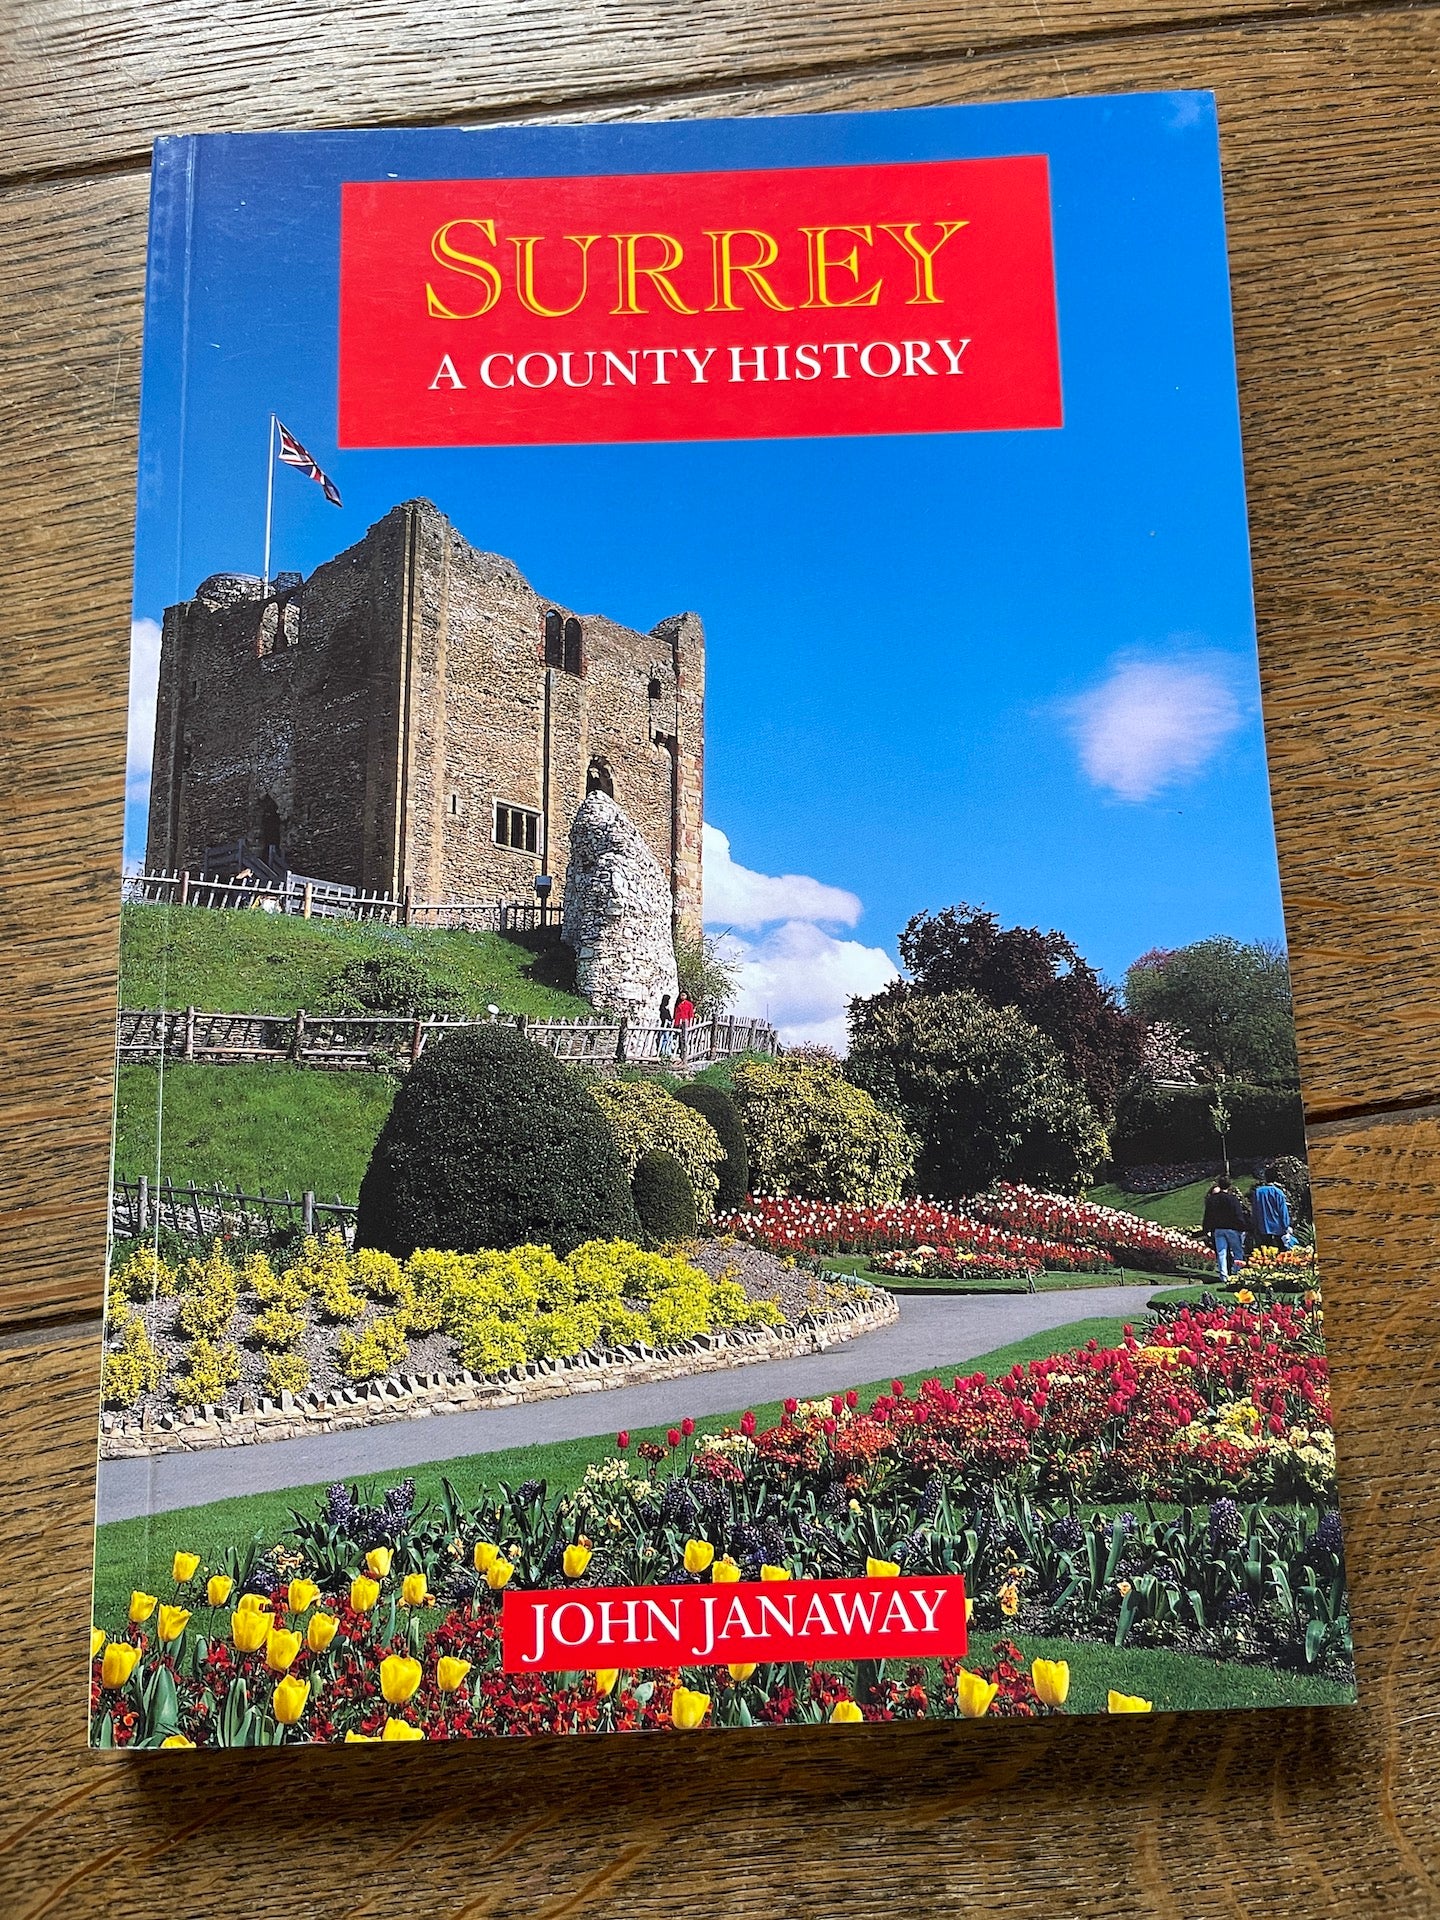 Surrey - a County History by John Janaway